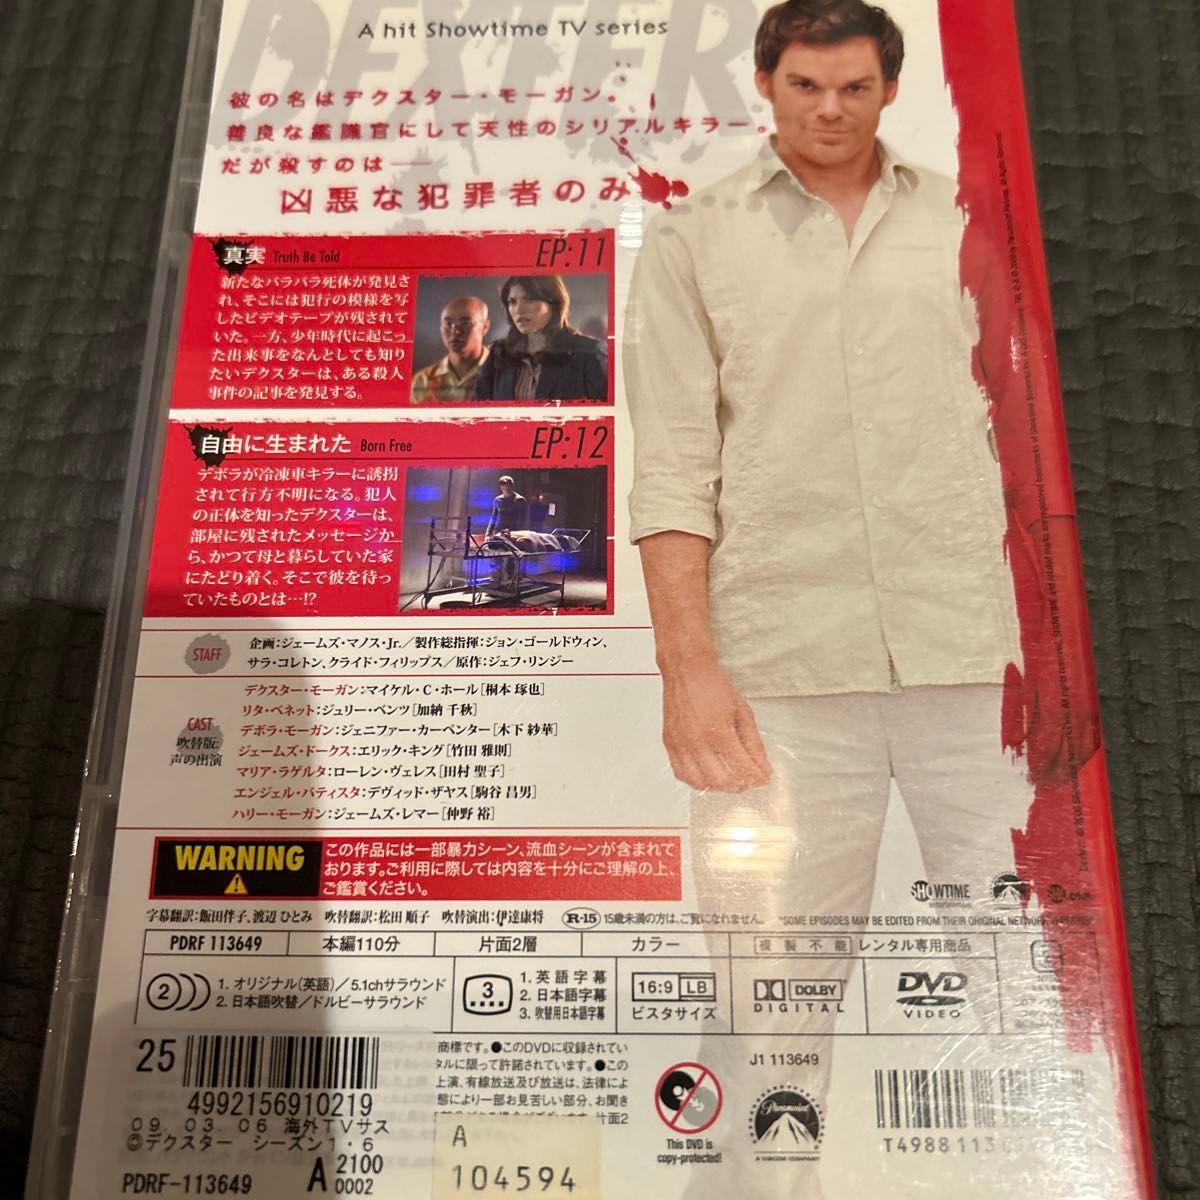 デクスター シーズン1 vol.6 b43434 【レンタル専用DVD】